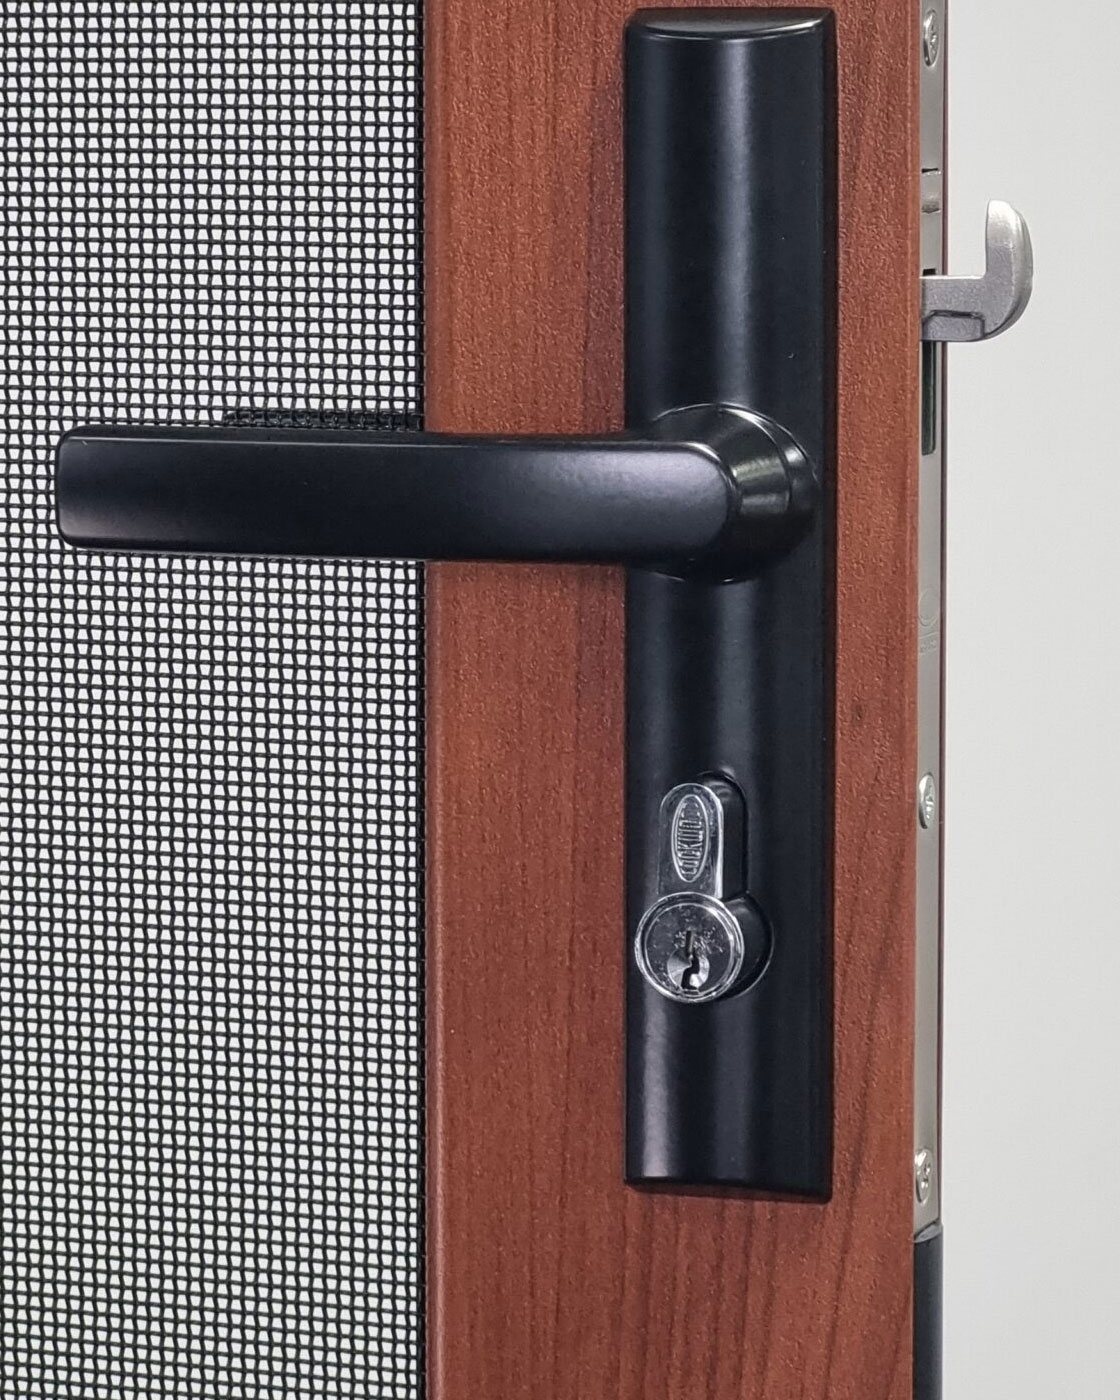 Lockwood 8654 parrot beak security screen door lock system